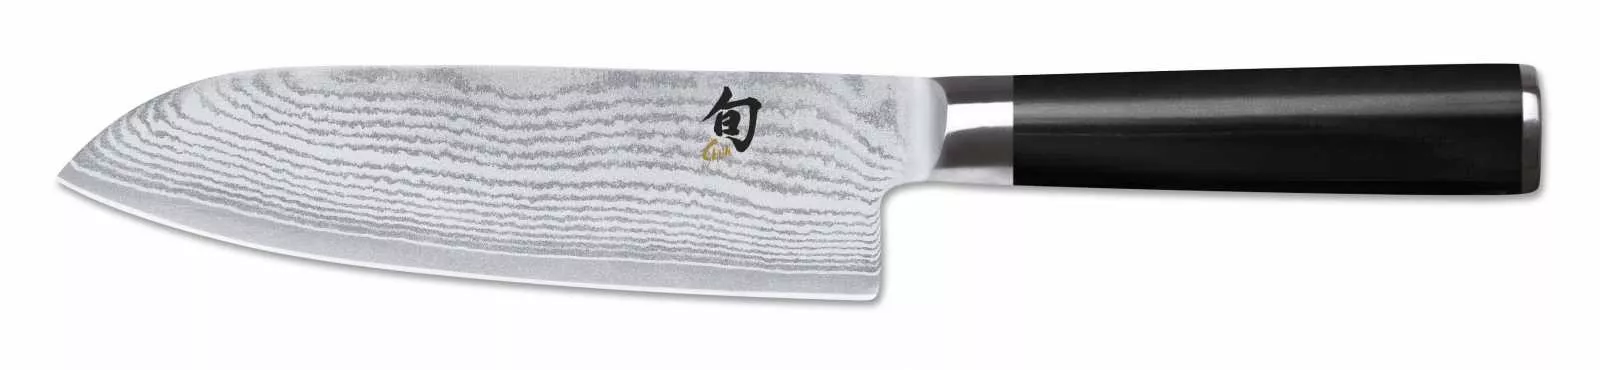 Нож-сантоку Kai Shun Classic, длина 18 см (DM-0702) - Фото nav 2